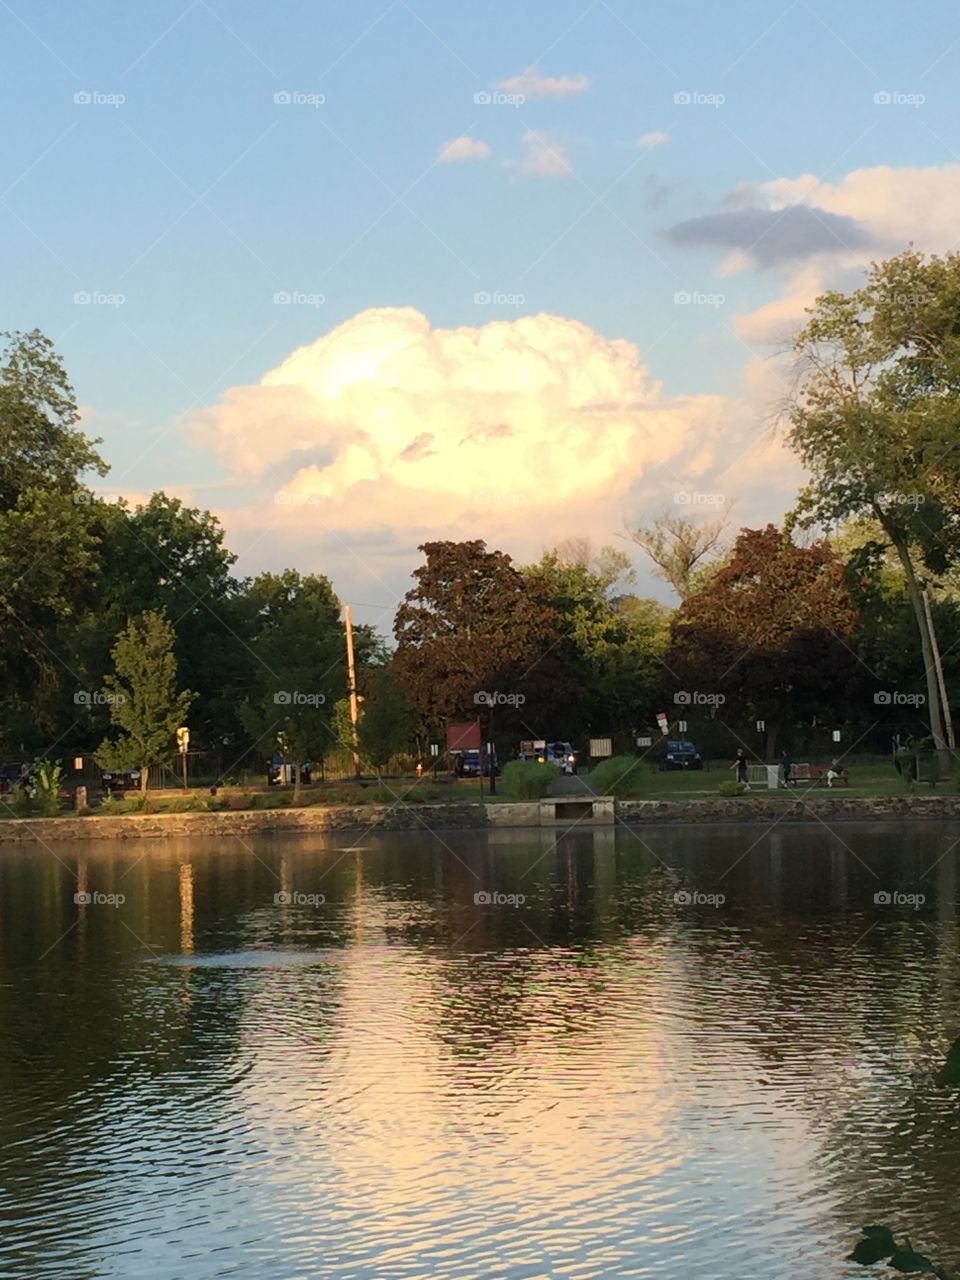 Ridder Park, NY. The pond at Ridder Park in Manhasset, NY. July 2015